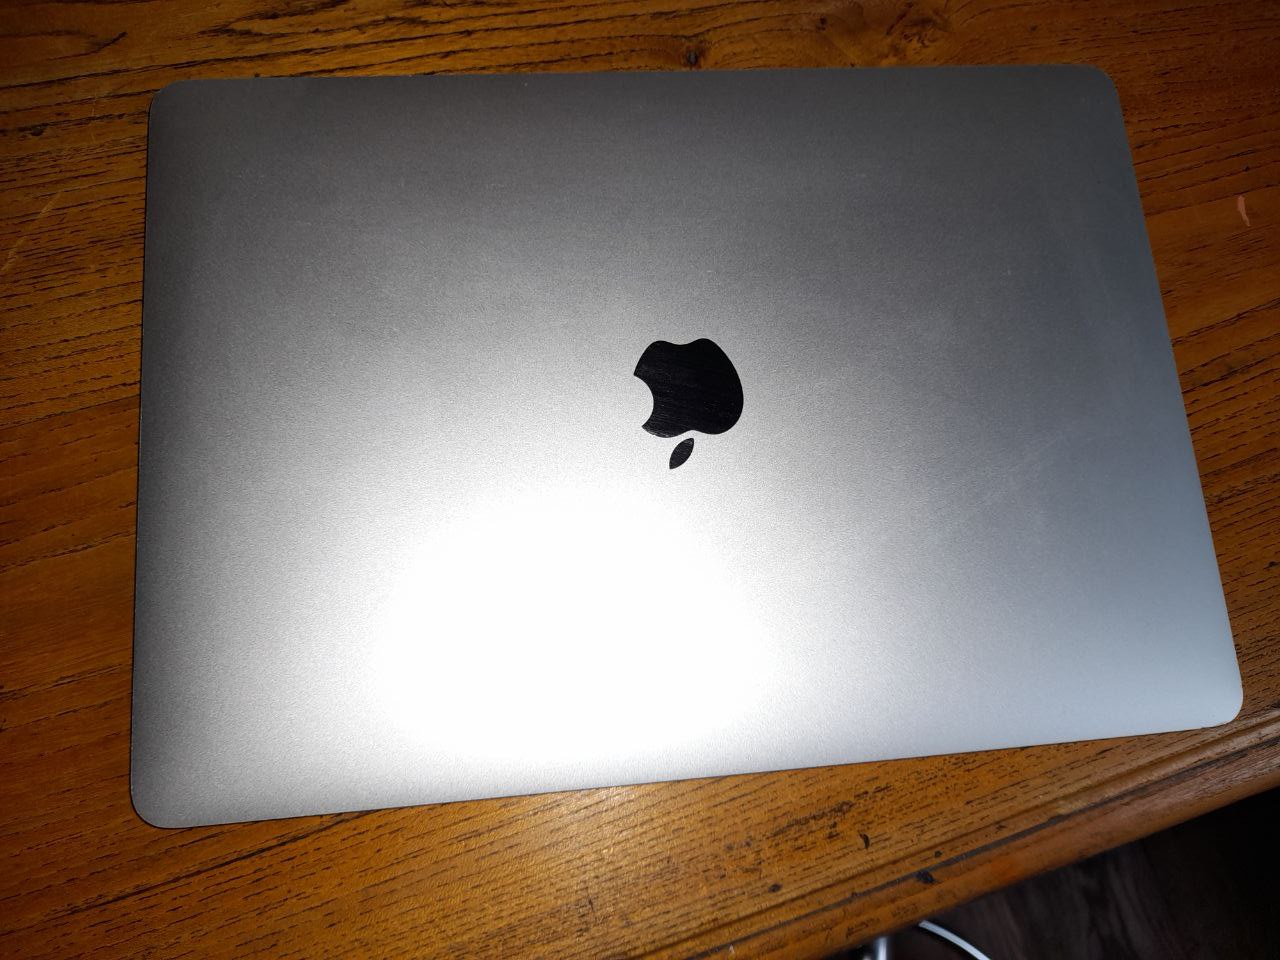 MacBook Pro 13 pouces gris 512